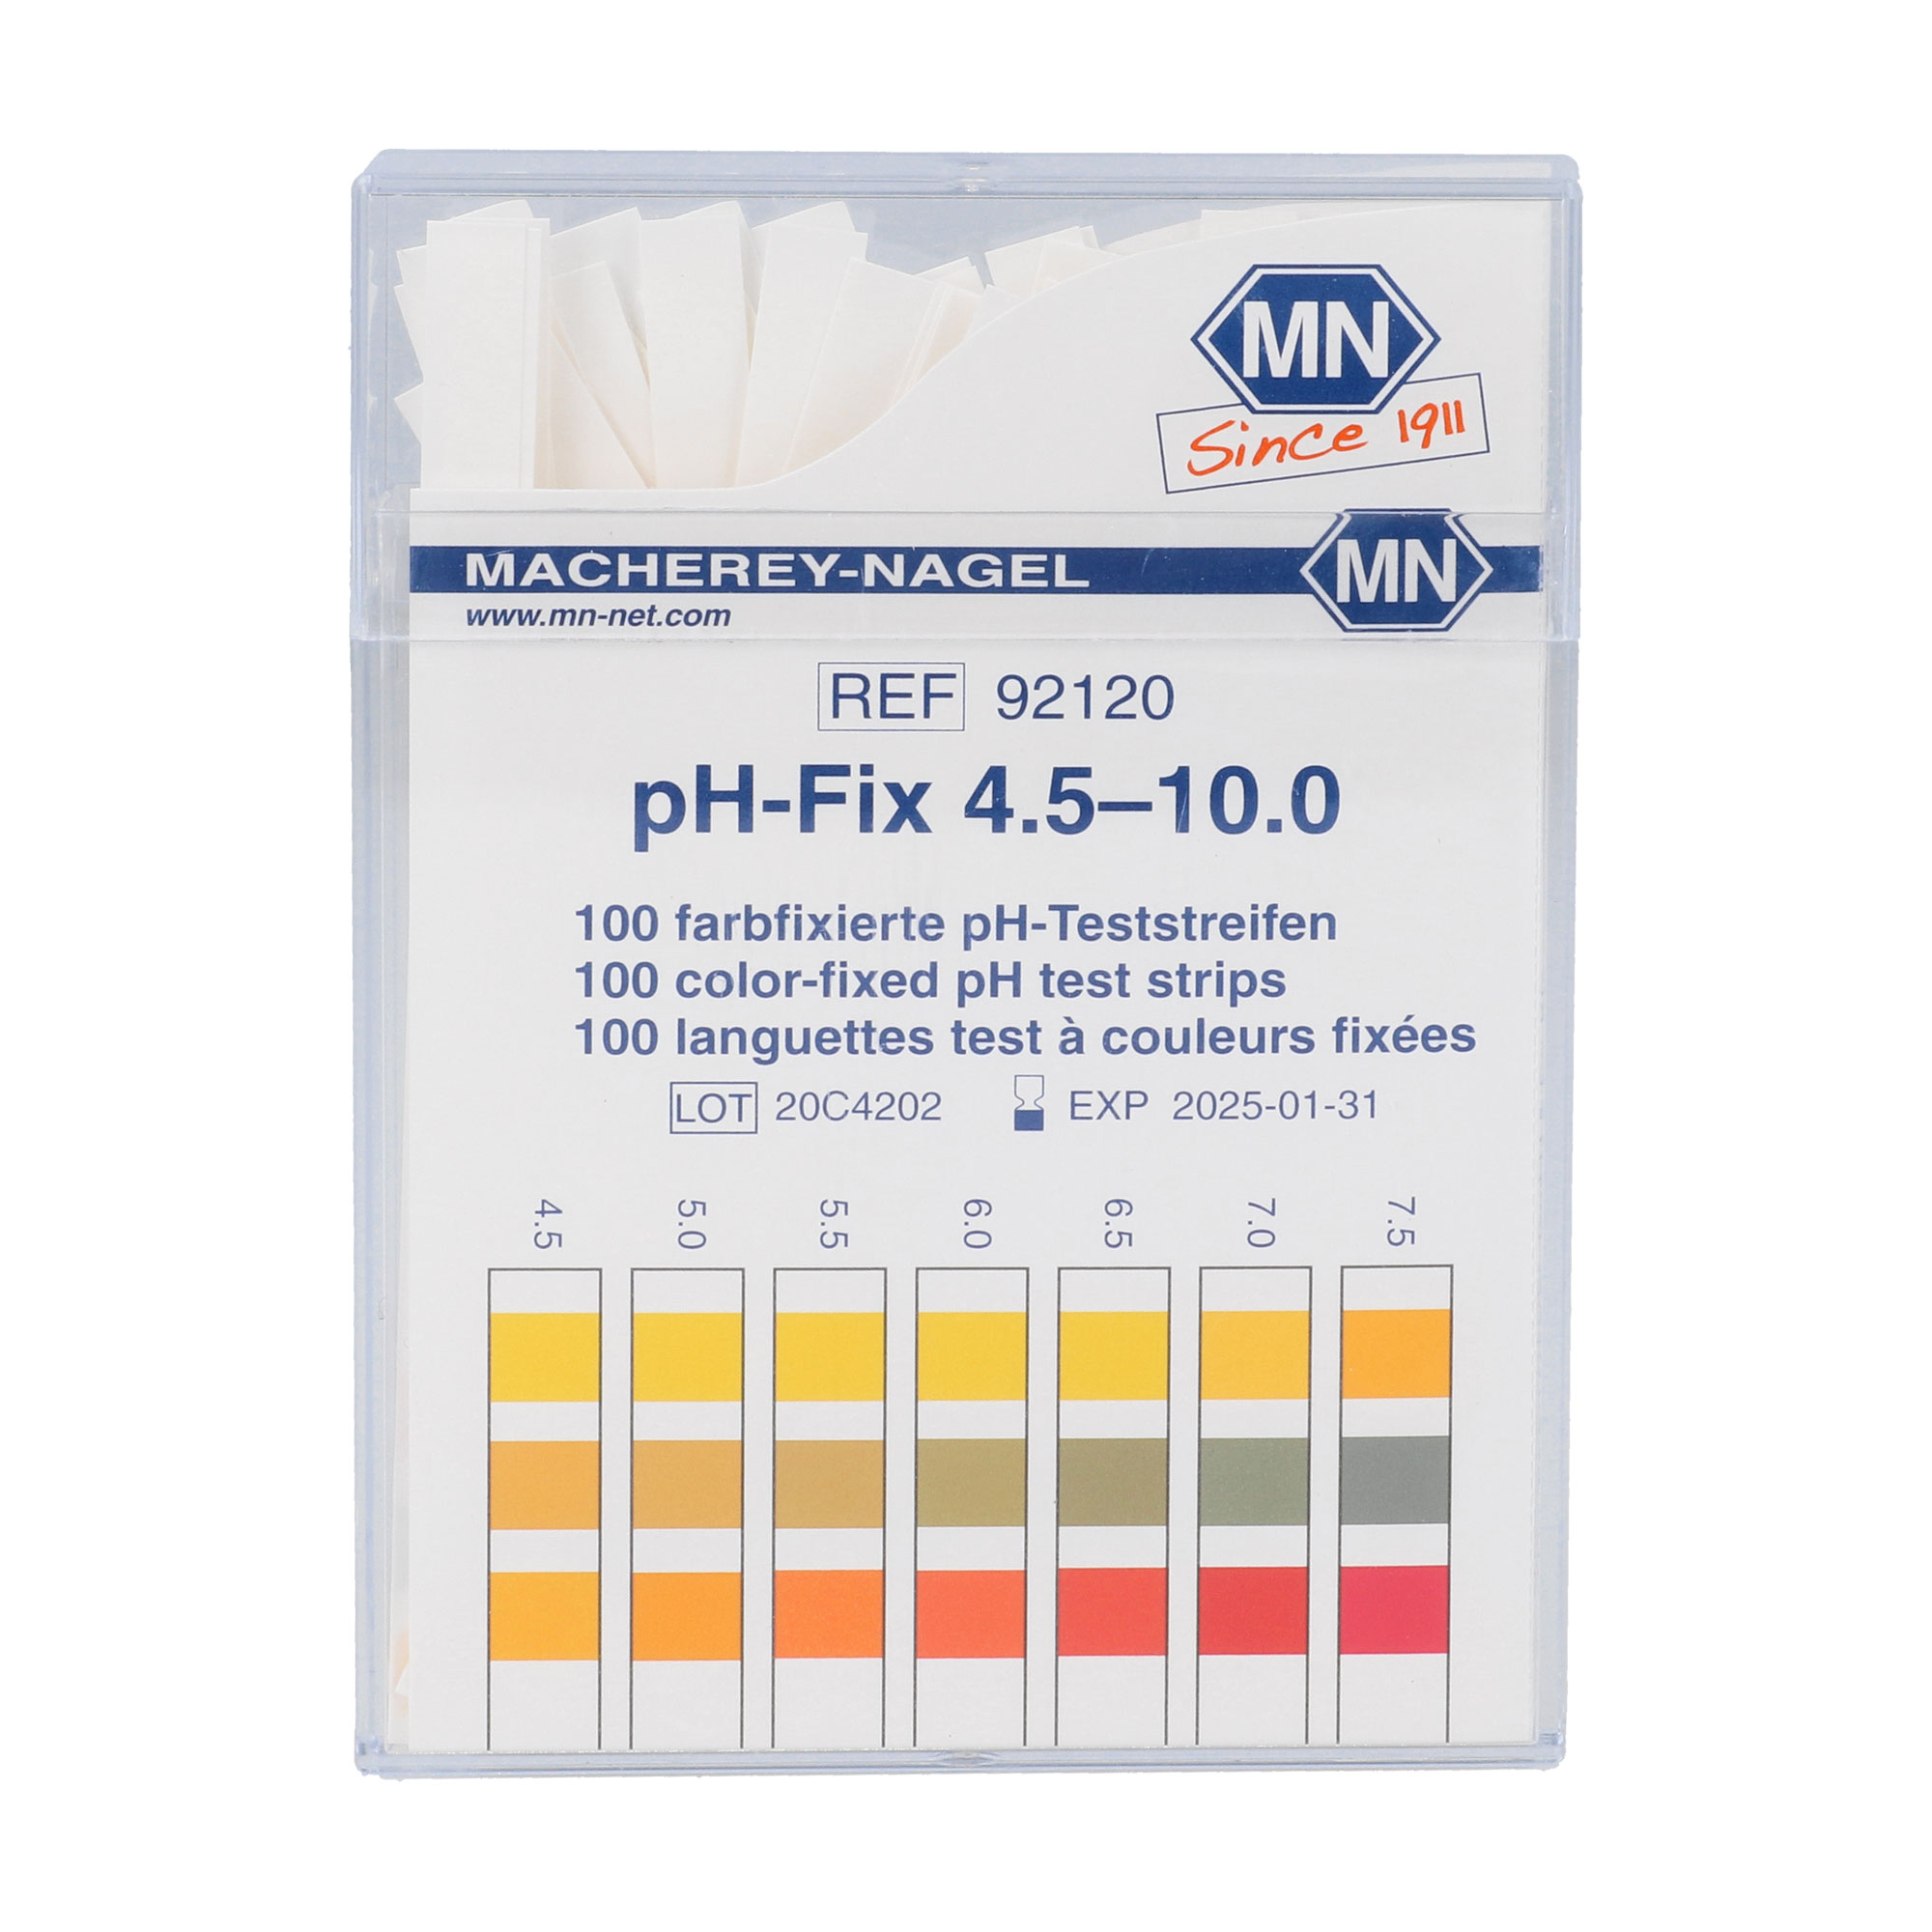 100 Farbfixierte pH-Teststreifen.